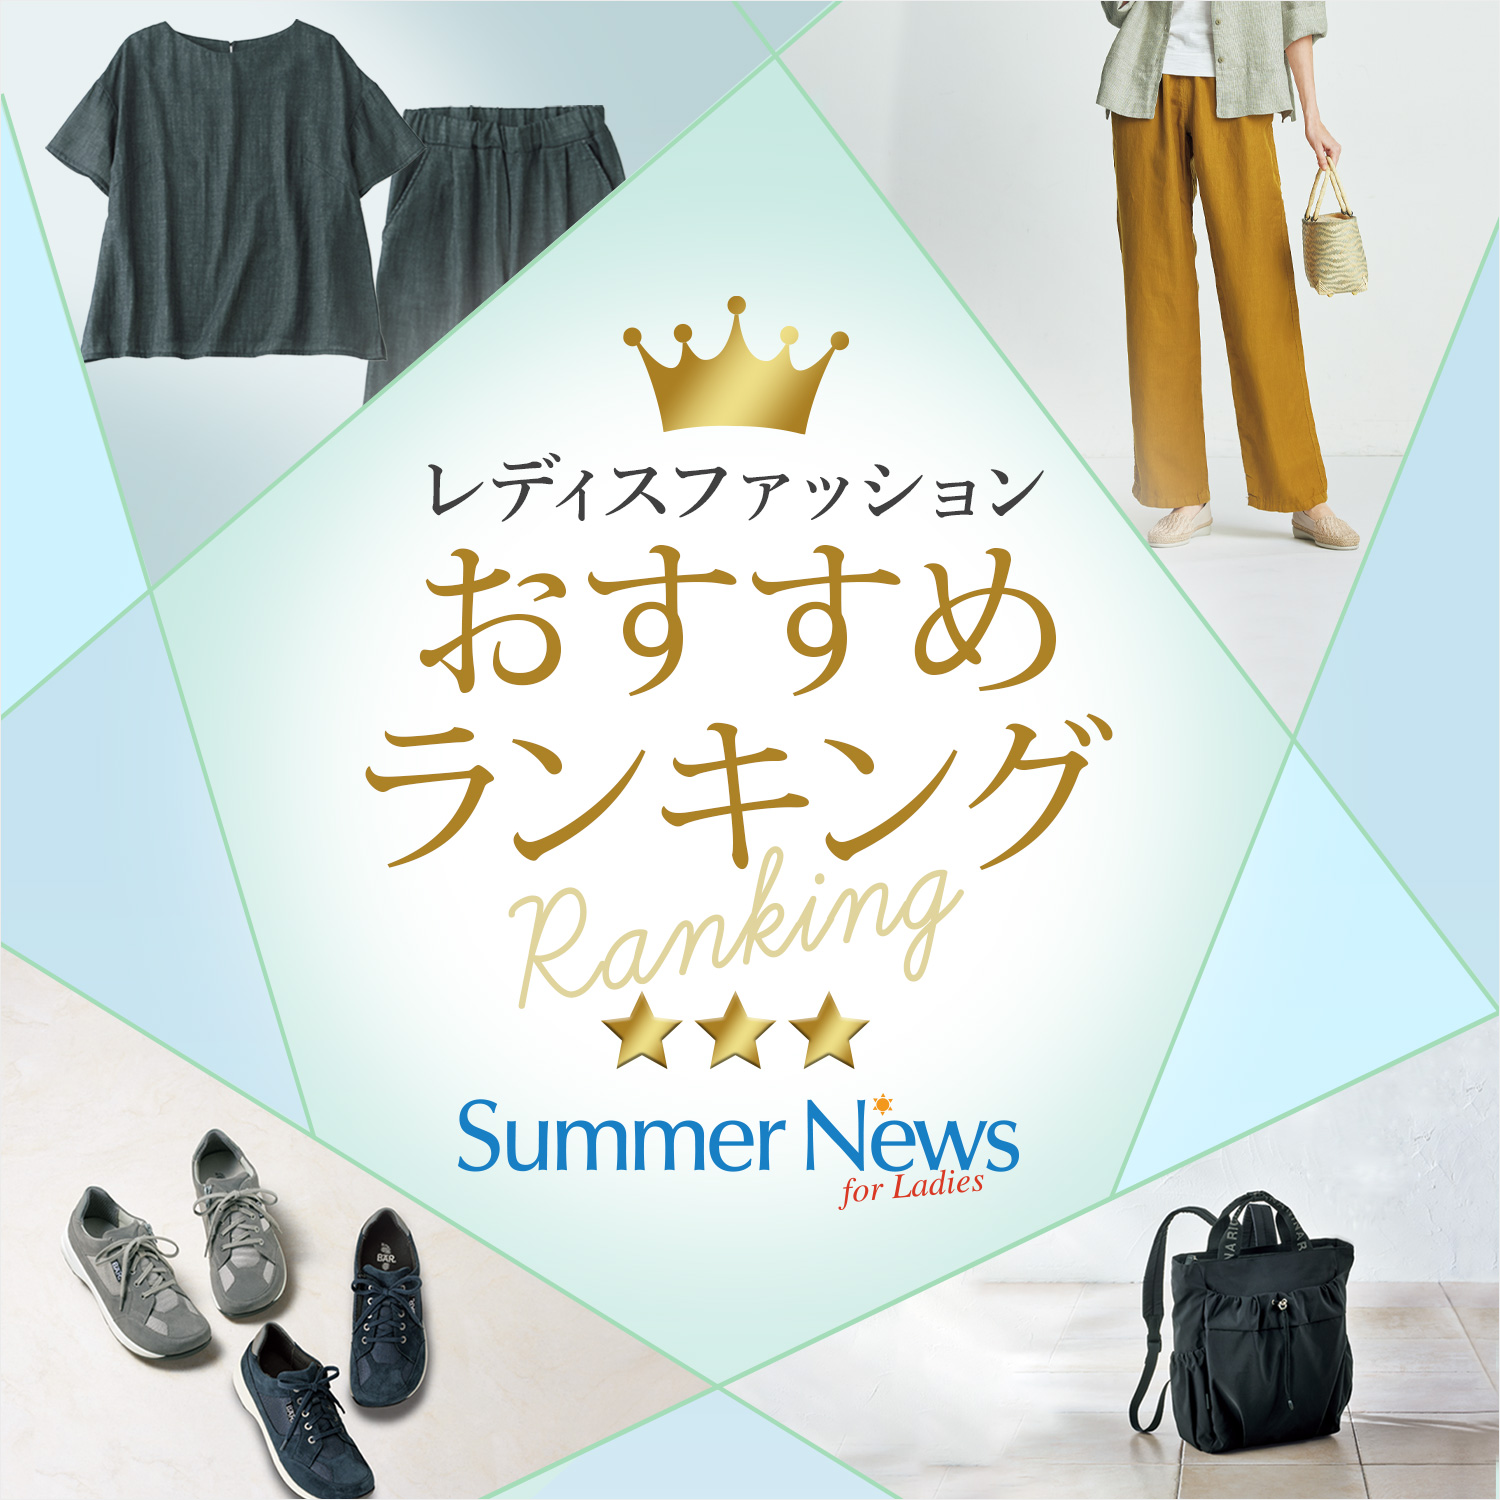 【特集】レディス人気おすすめランキング Summer News for Ladies